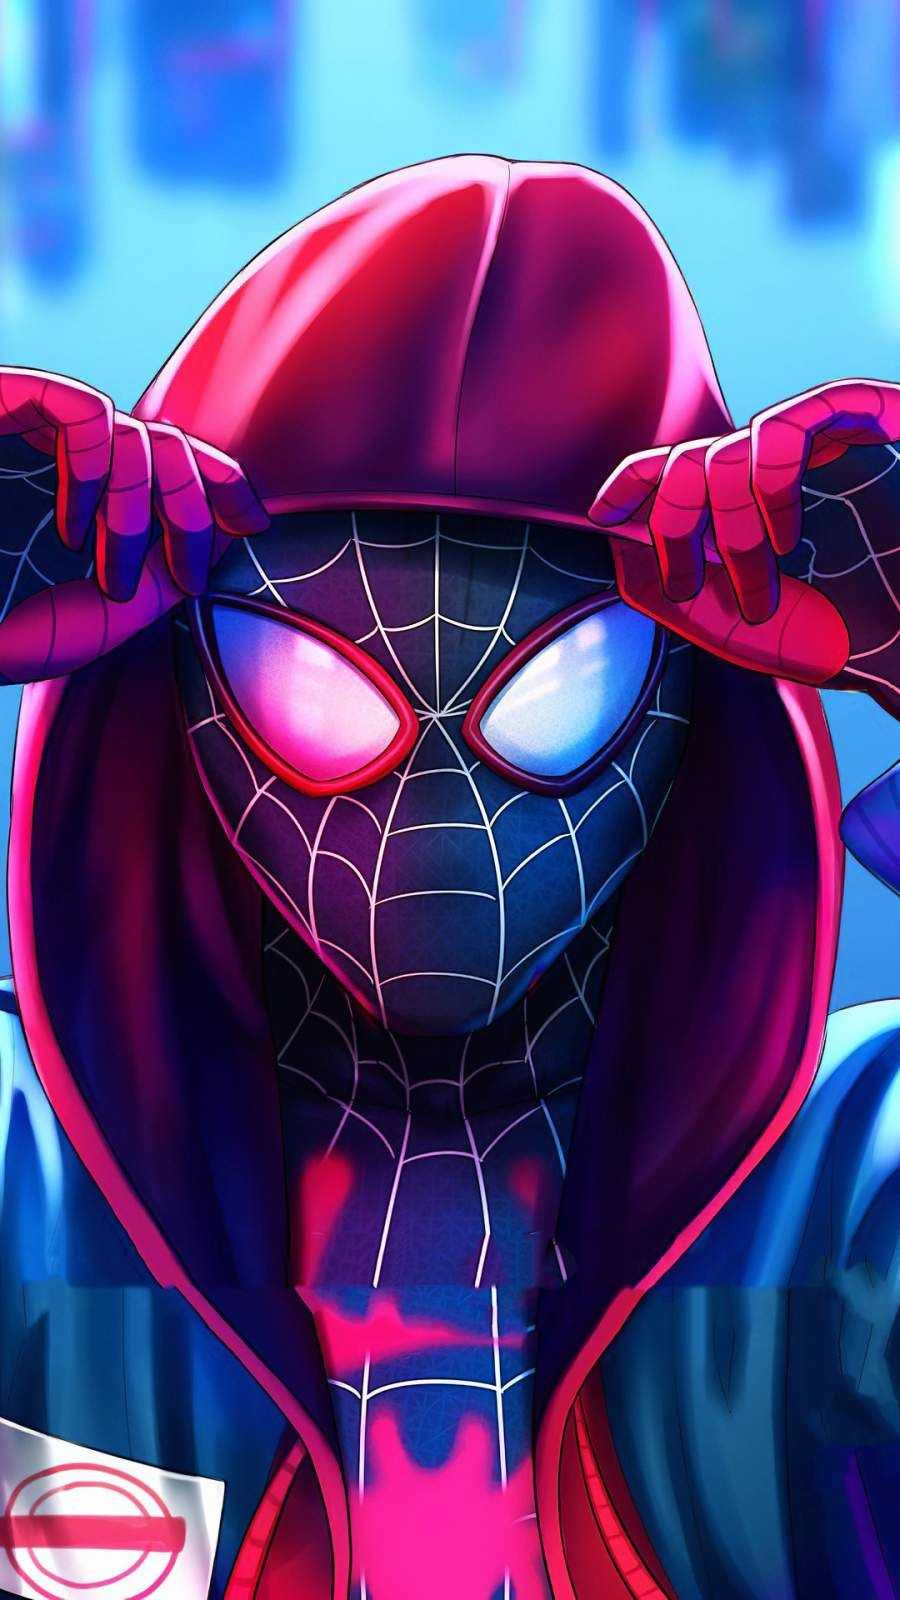 Spiderman wallpaper hd